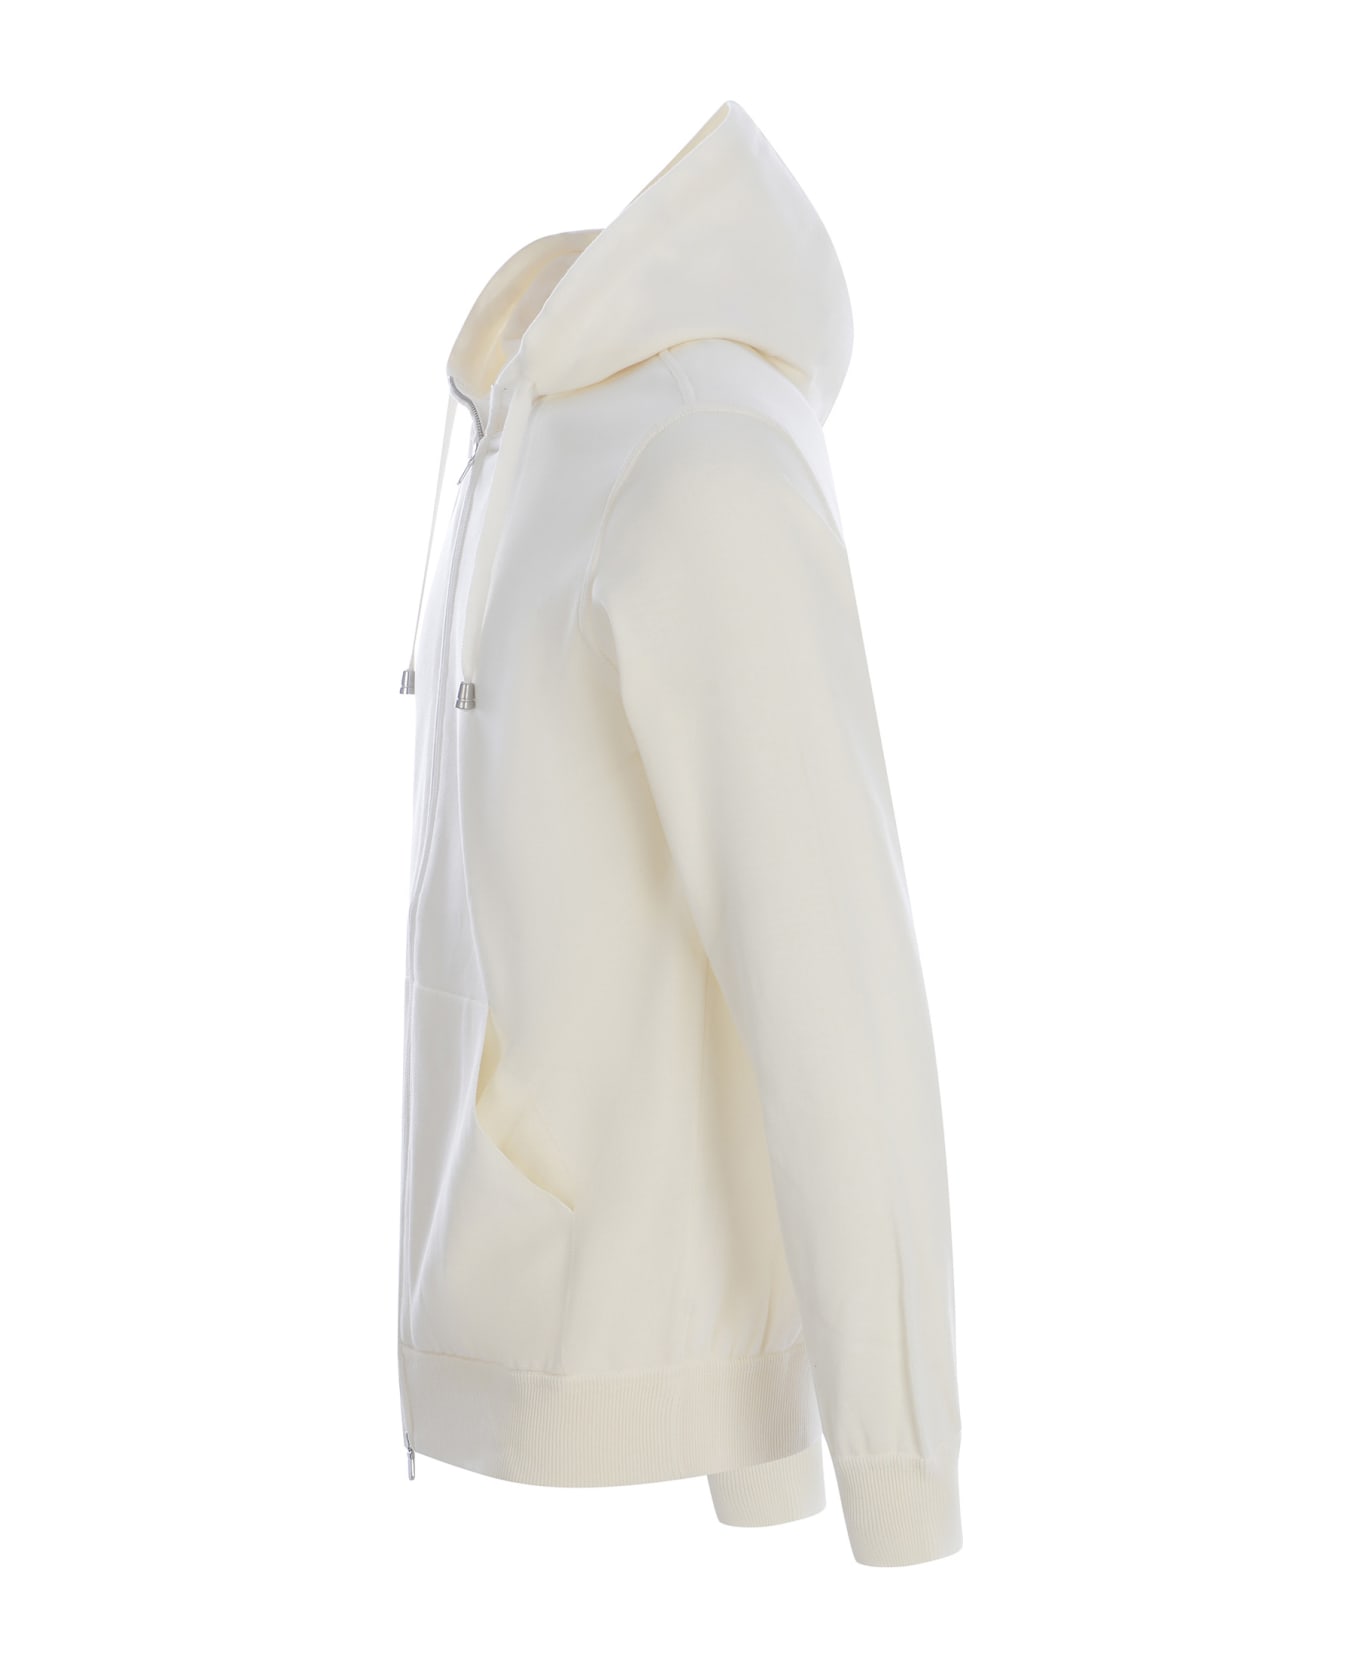 Filippo De Laurentiis Sweatshirt Filippo De Laurentis Made Of Cotton Thread - Off white